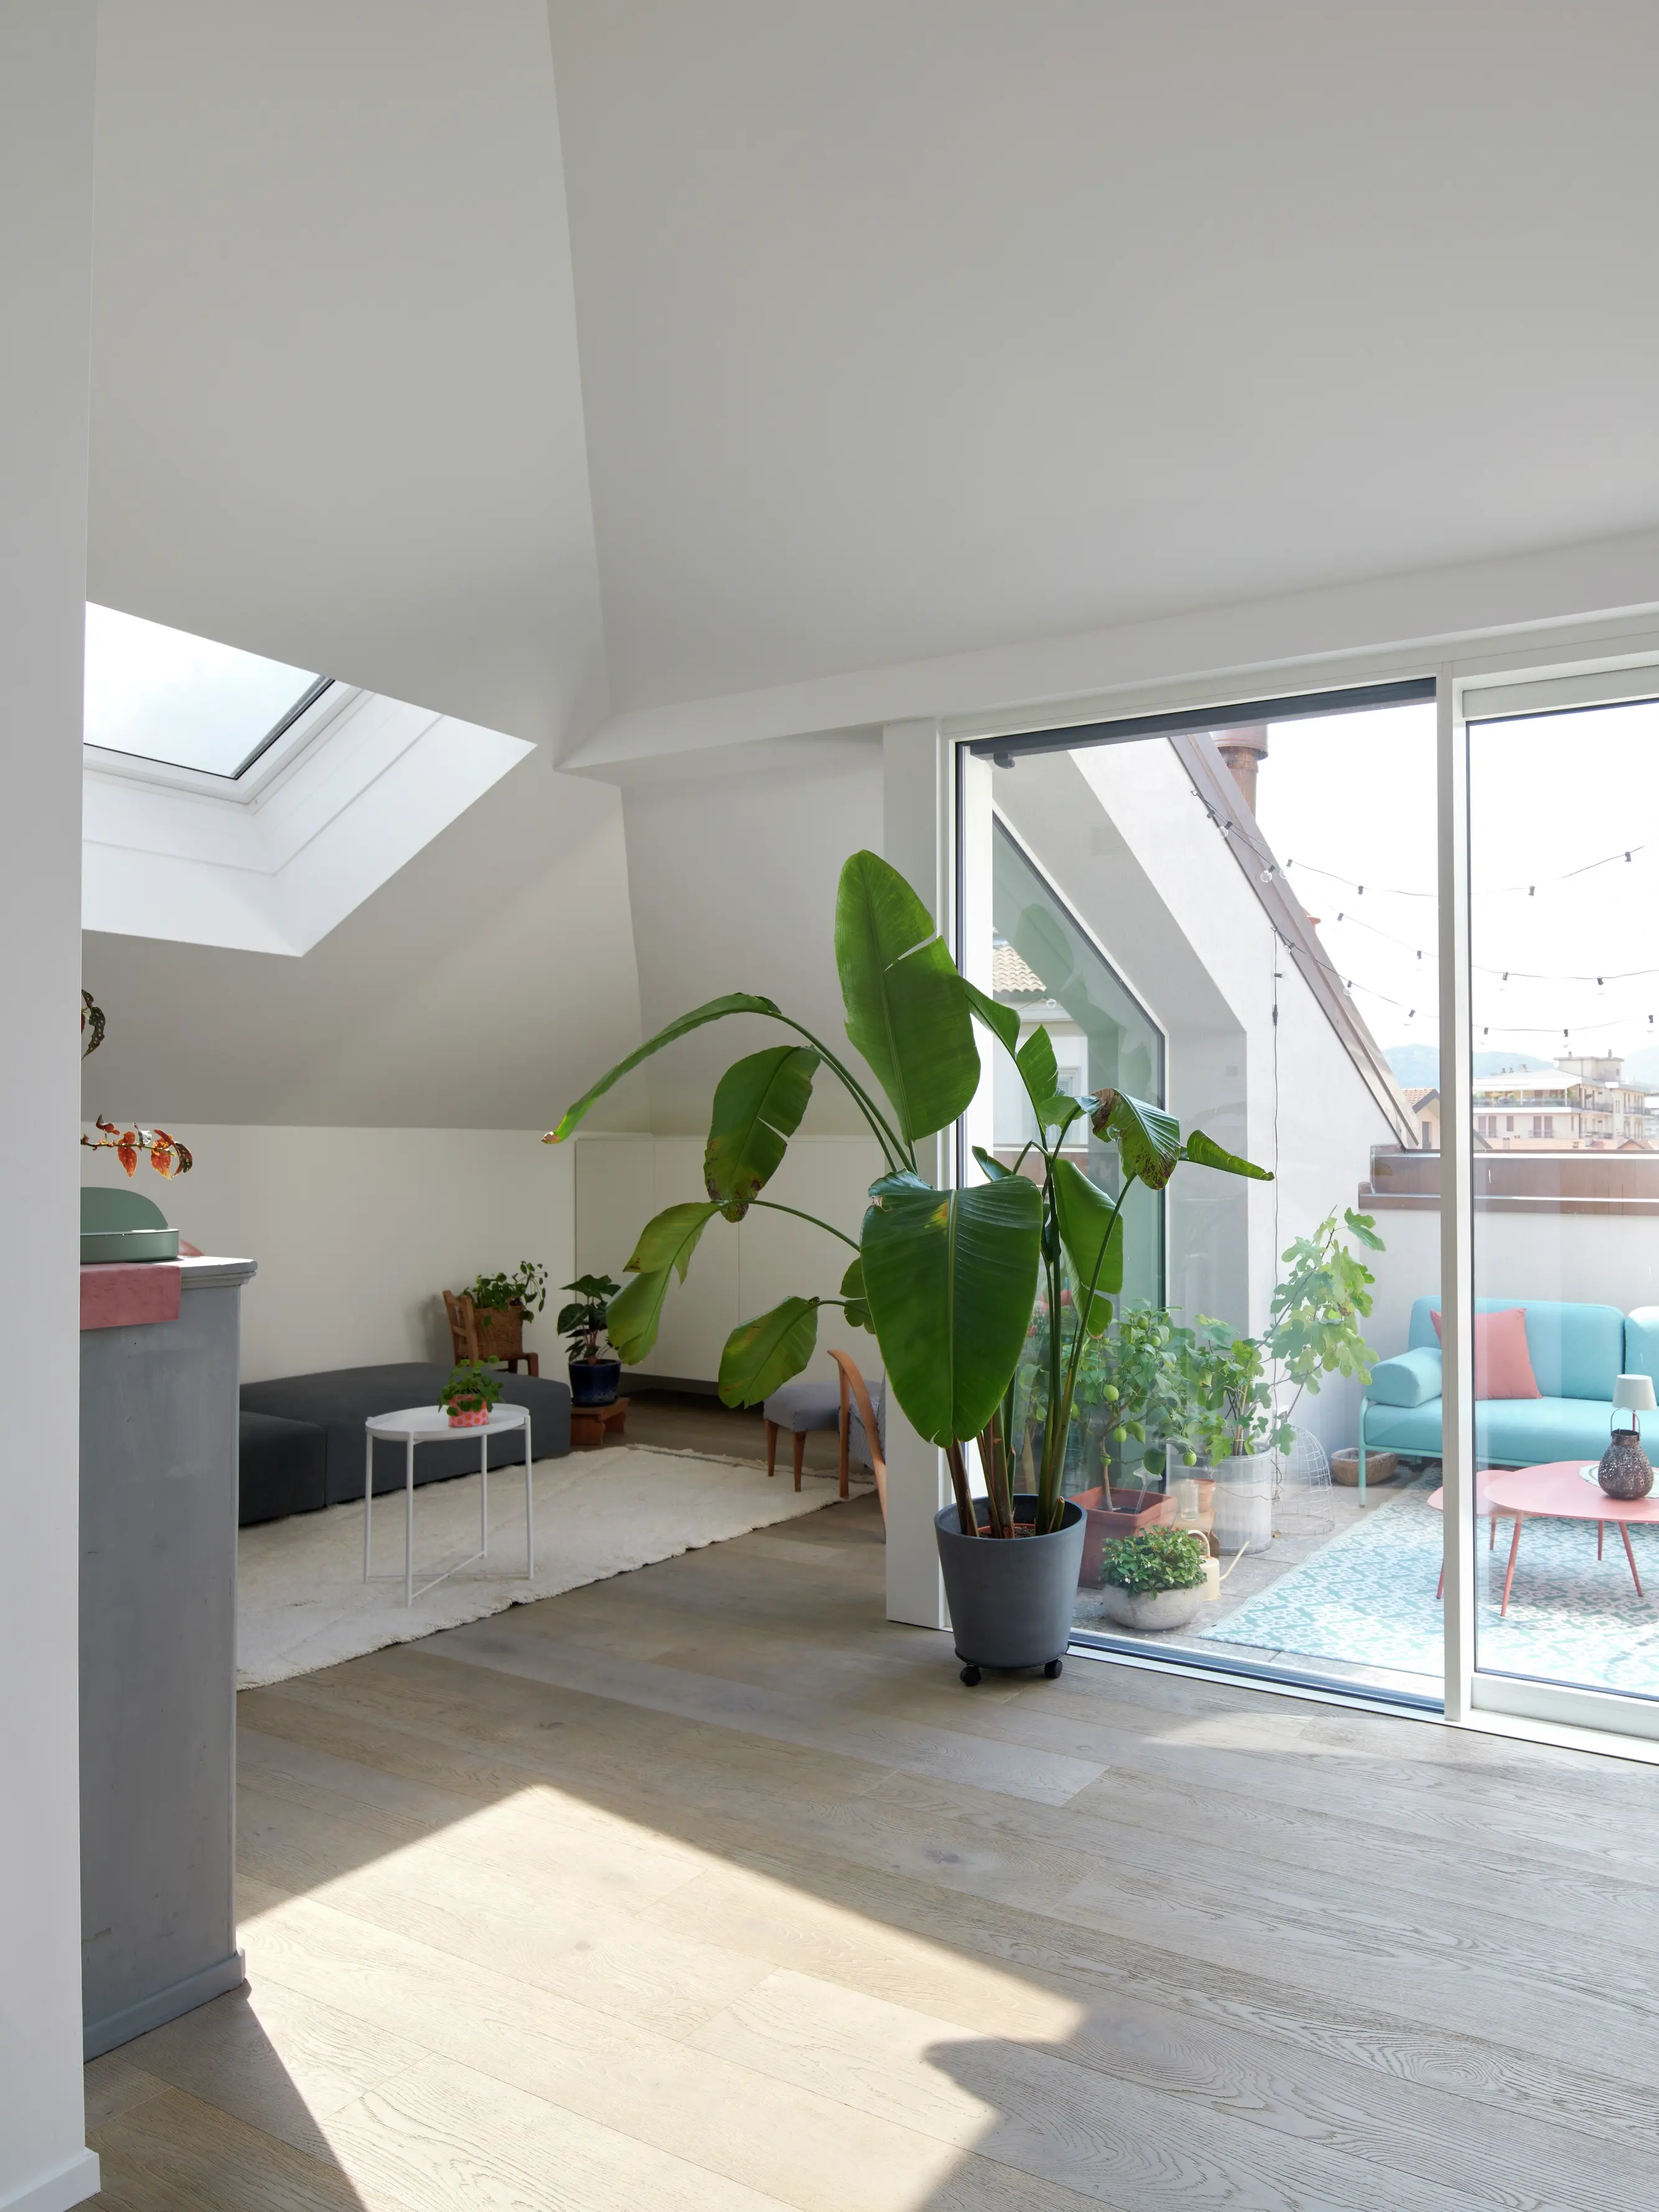 Cucina e zona pranzo open space con luce naturale proveniente dalle finestre per tetti VELUX.